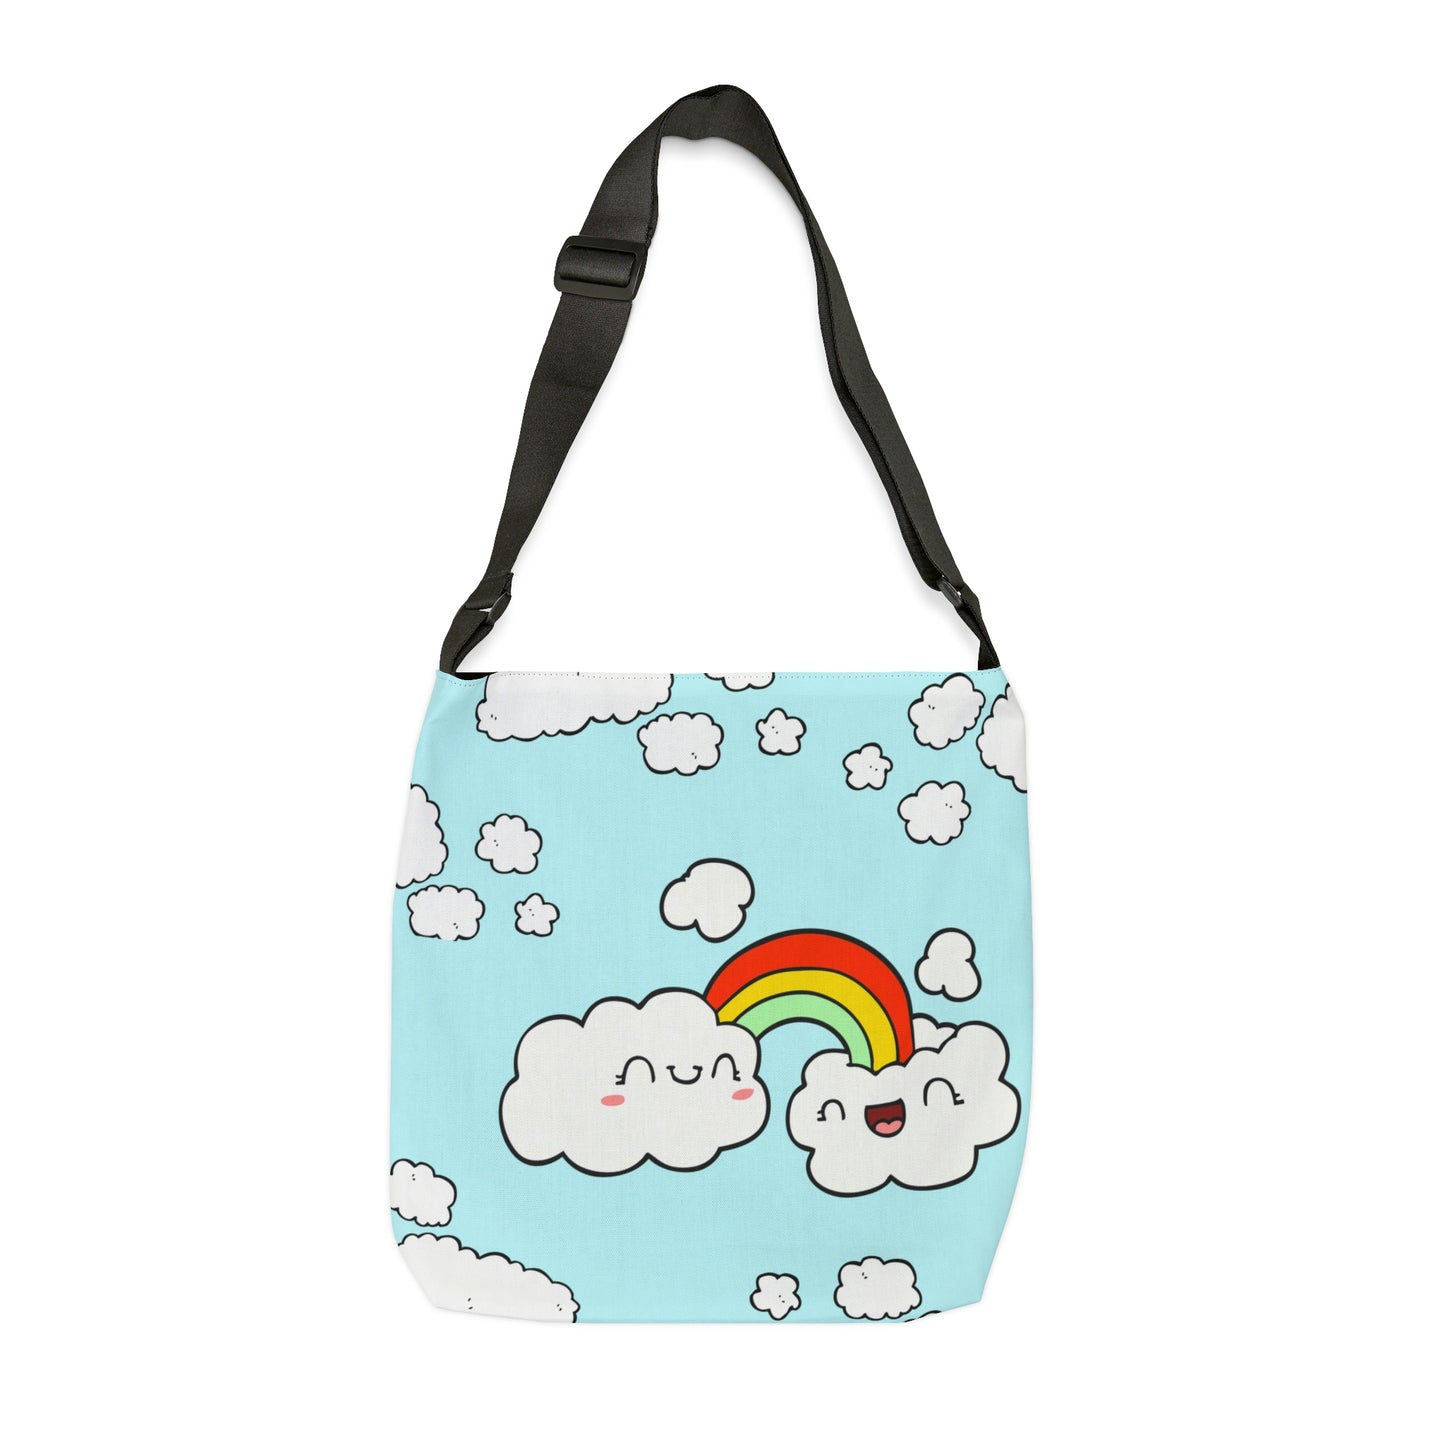 Cloud Nine Messenger Bag